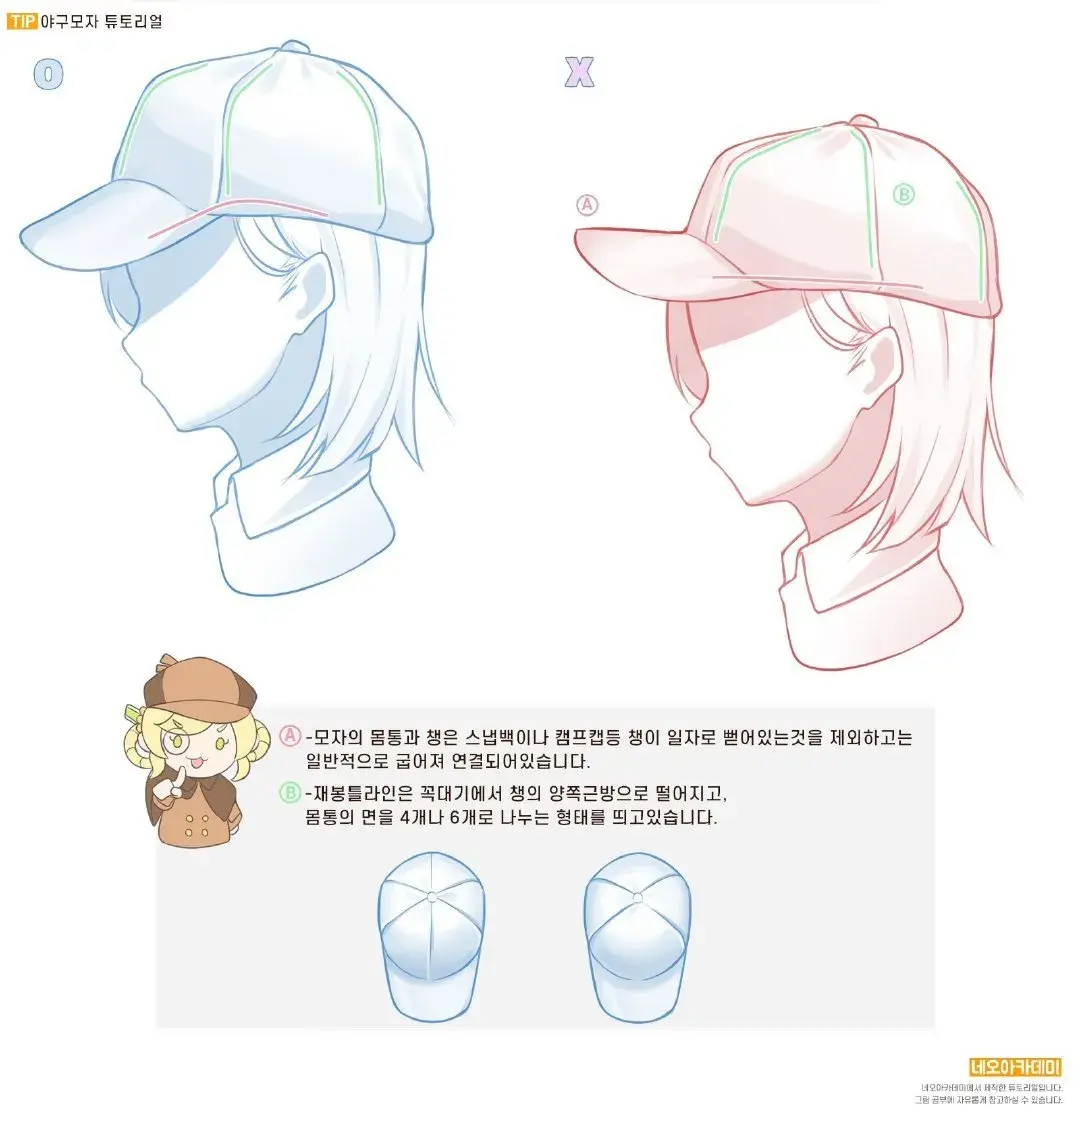 动漫人物的帽子怎么画日系插画风格的那种